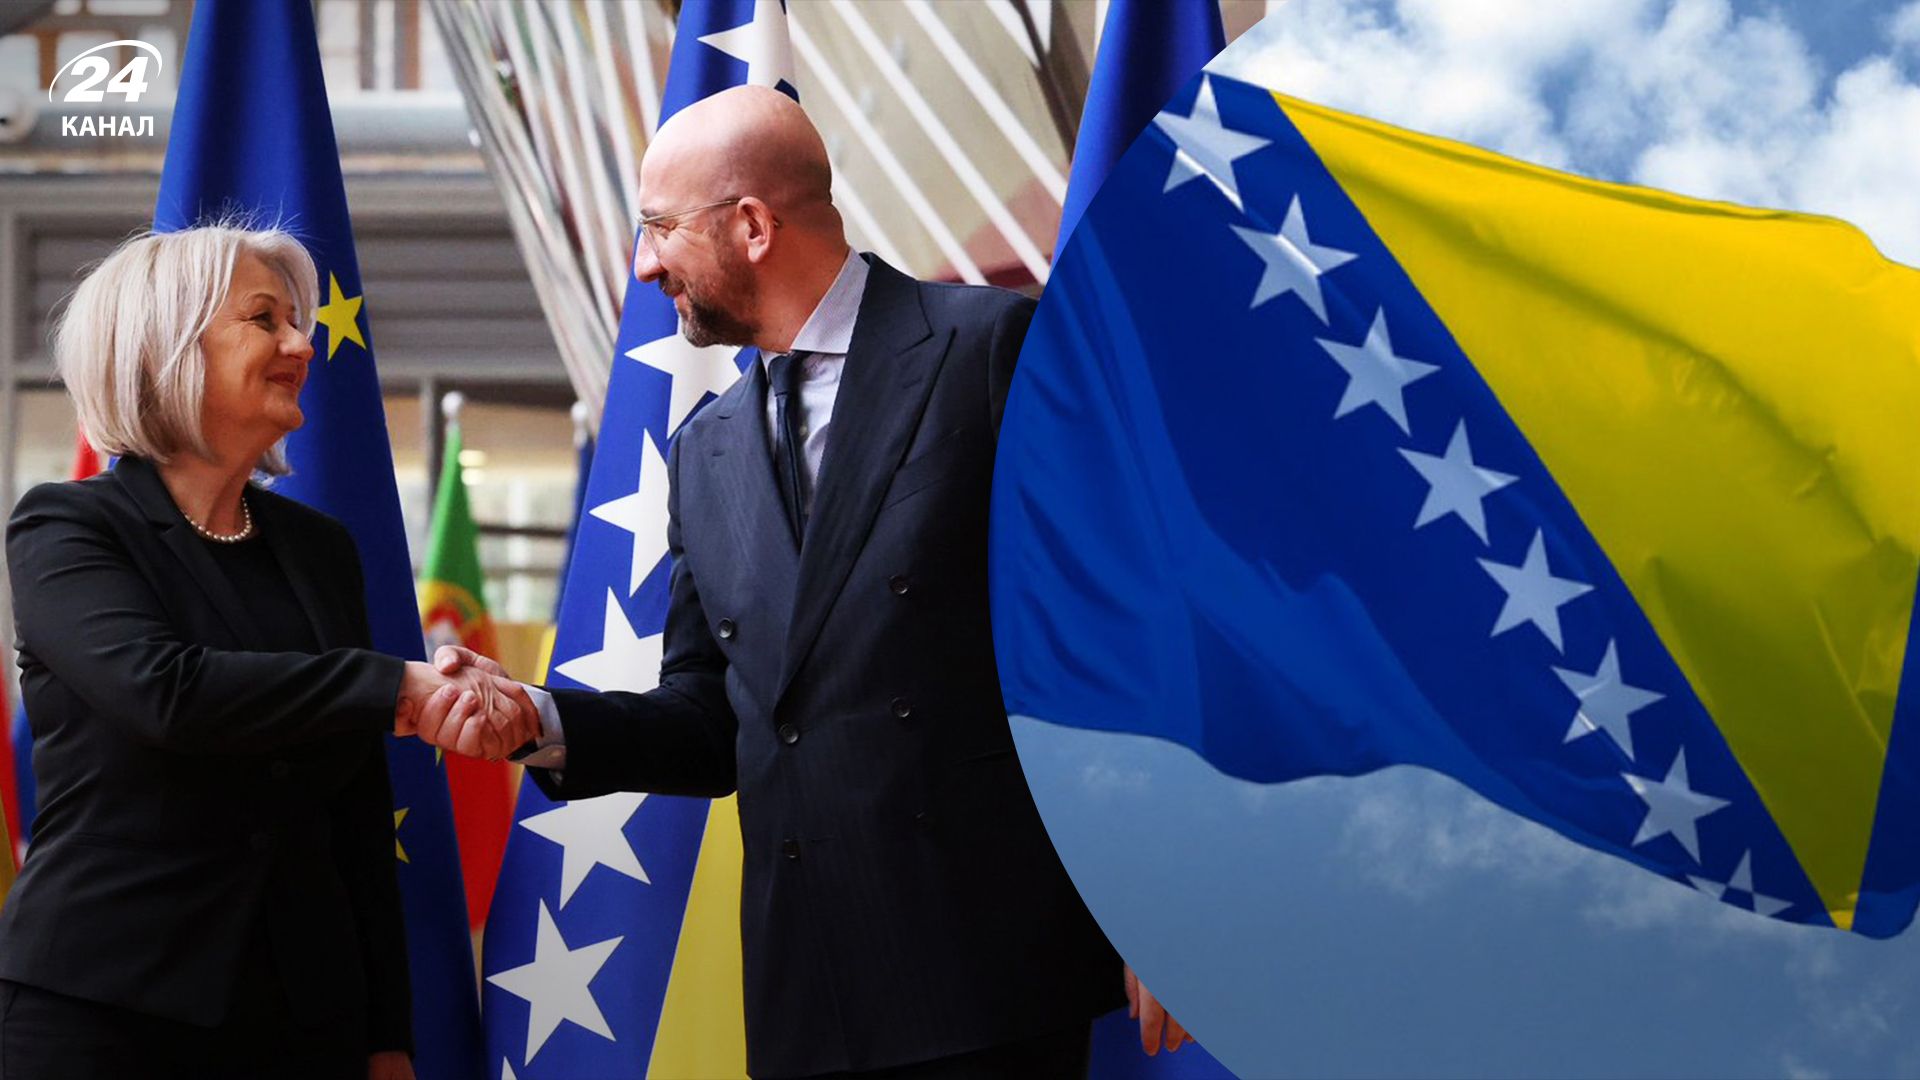 ЕС решил начать переговоры о вступлении с Боснией и Герцеговиной